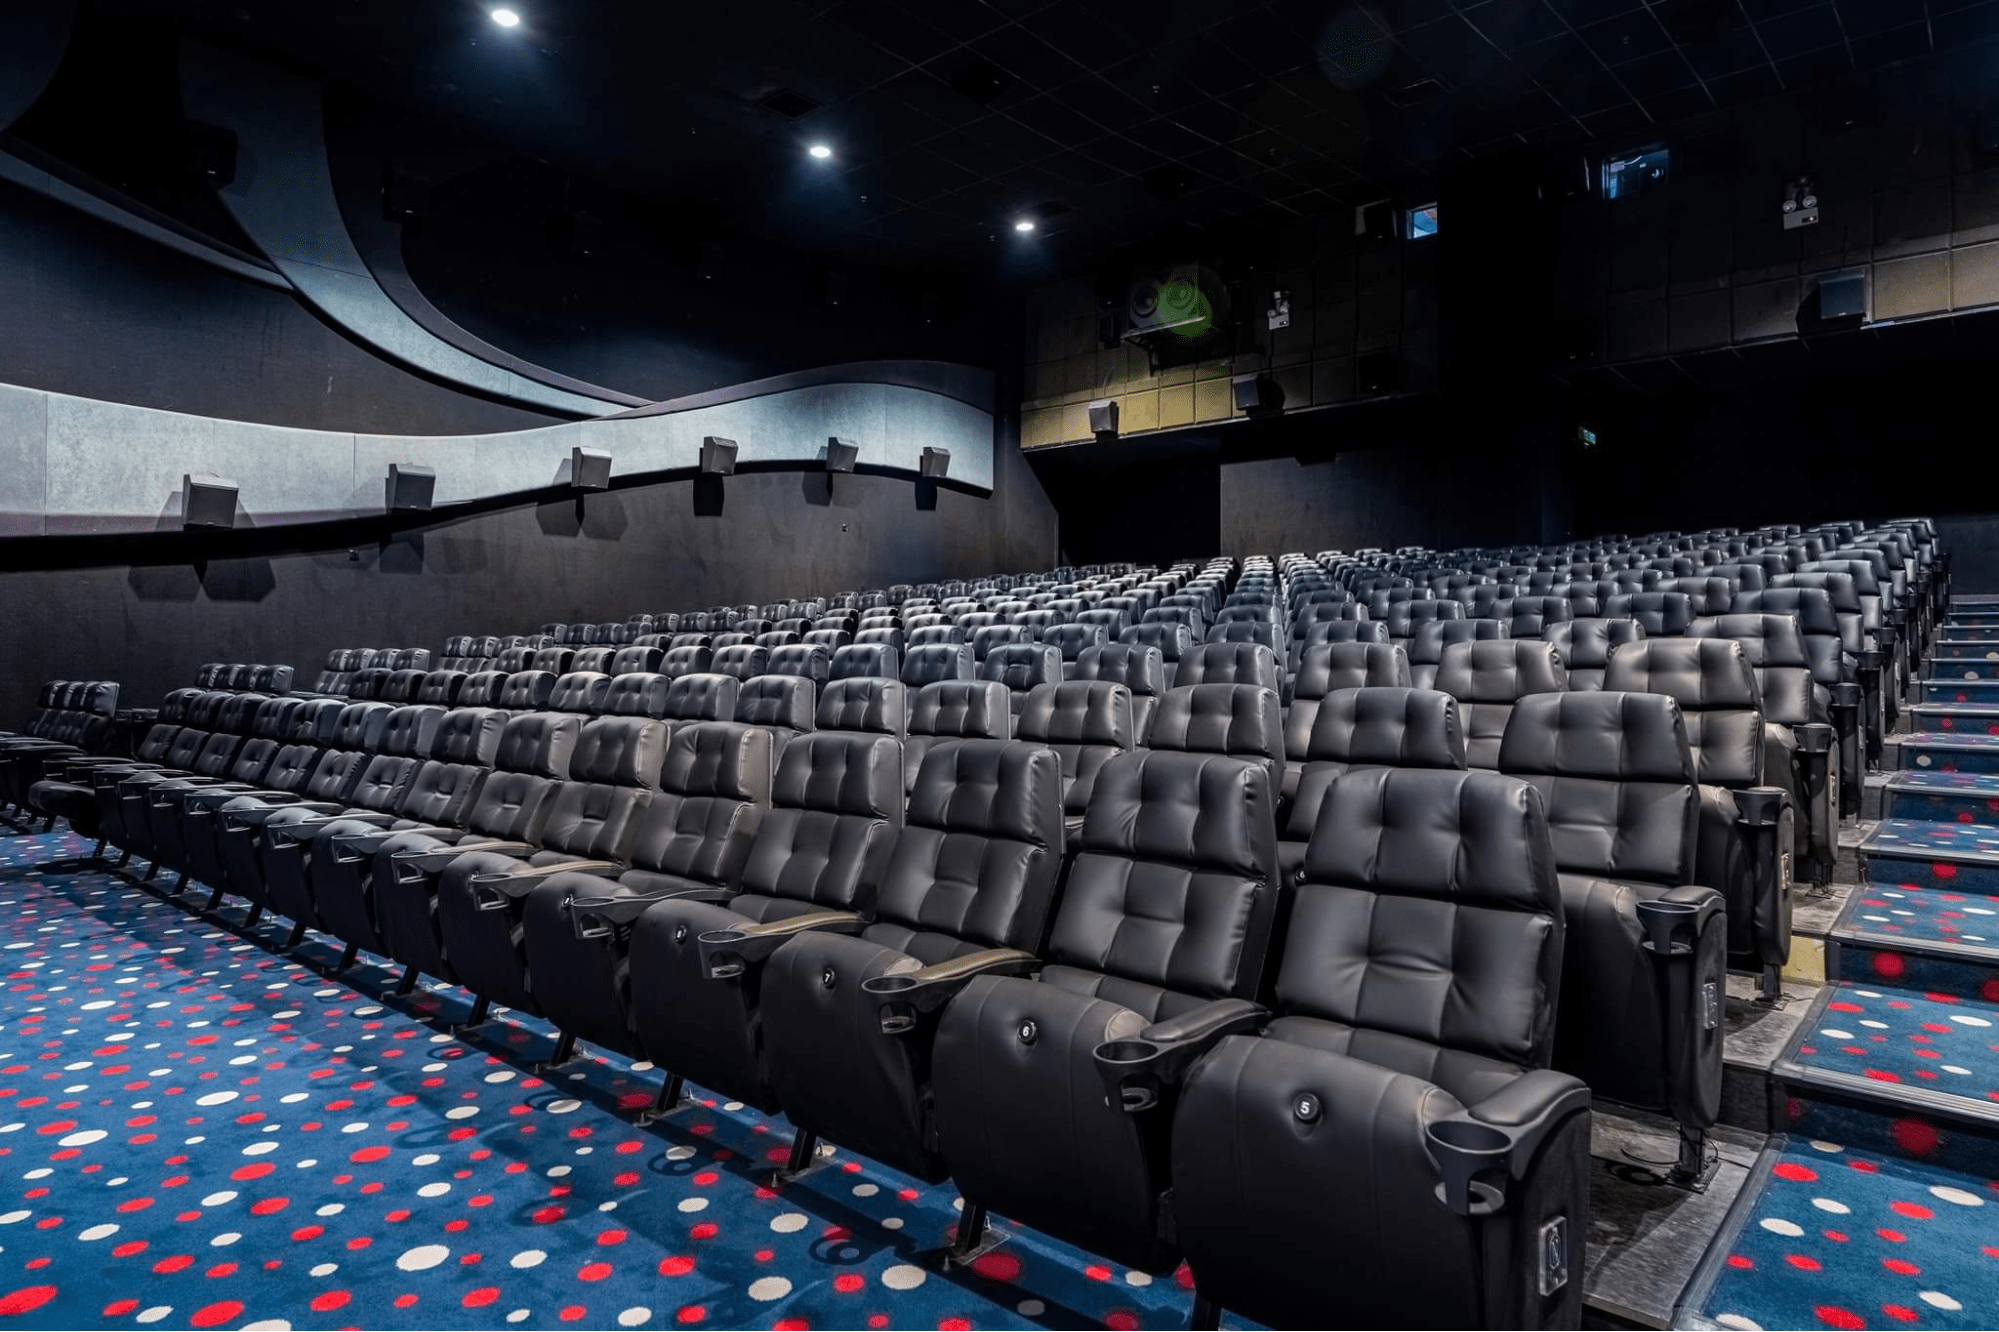 cinemas in jb - gsc seats